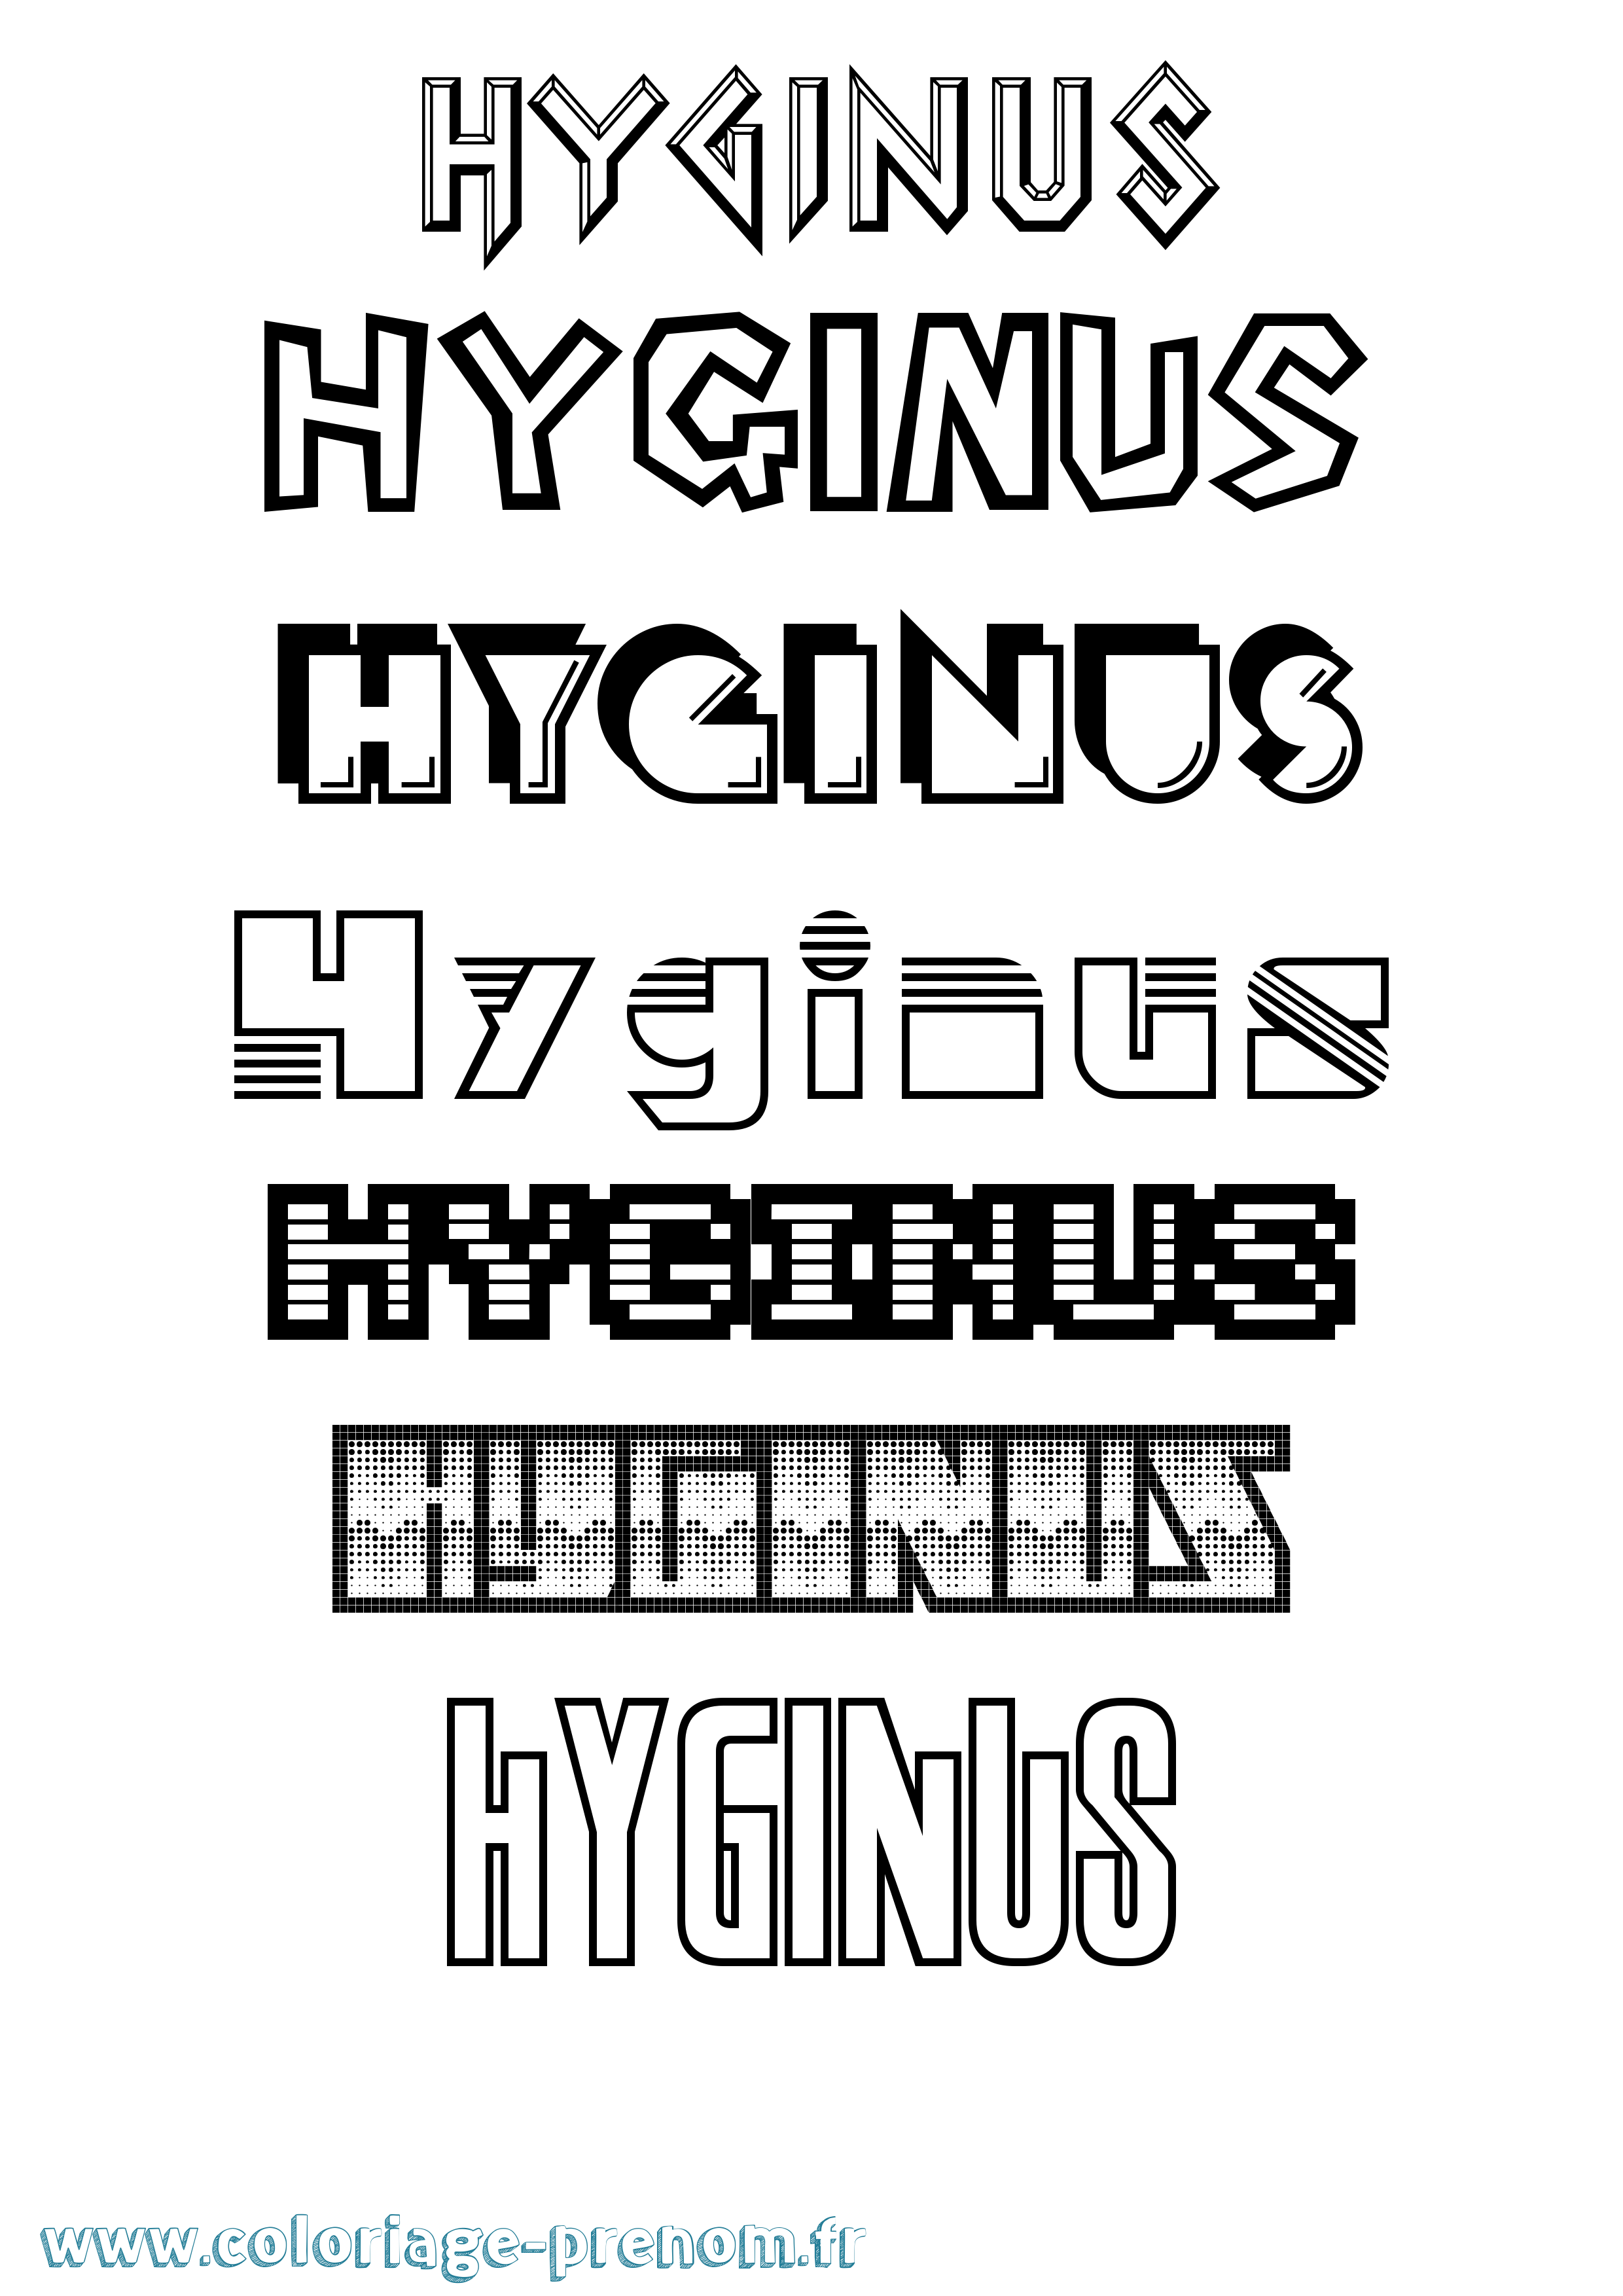 Coloriage prénom Hyginus Jeux Vidéos